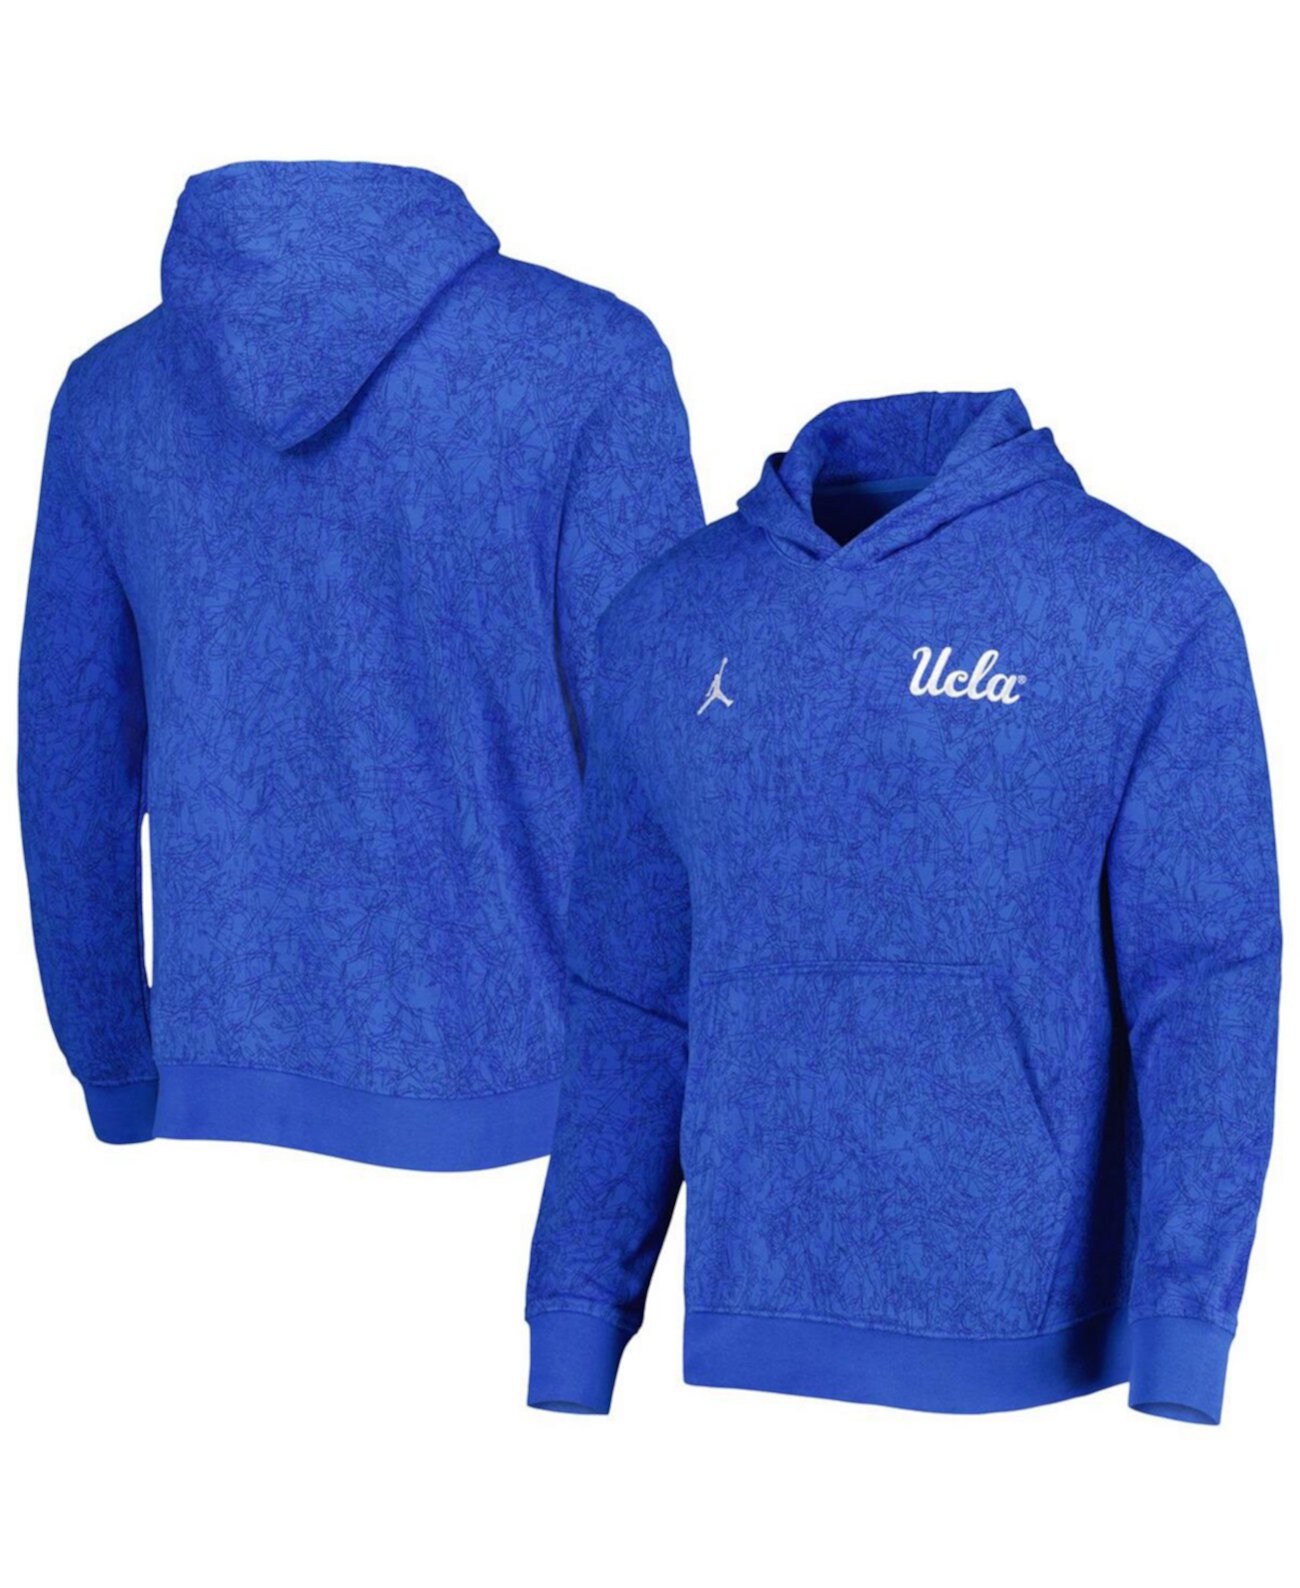 Мужской синий дорожный пуловер с капюшоном и логотипом UCLA Bruins Jordan